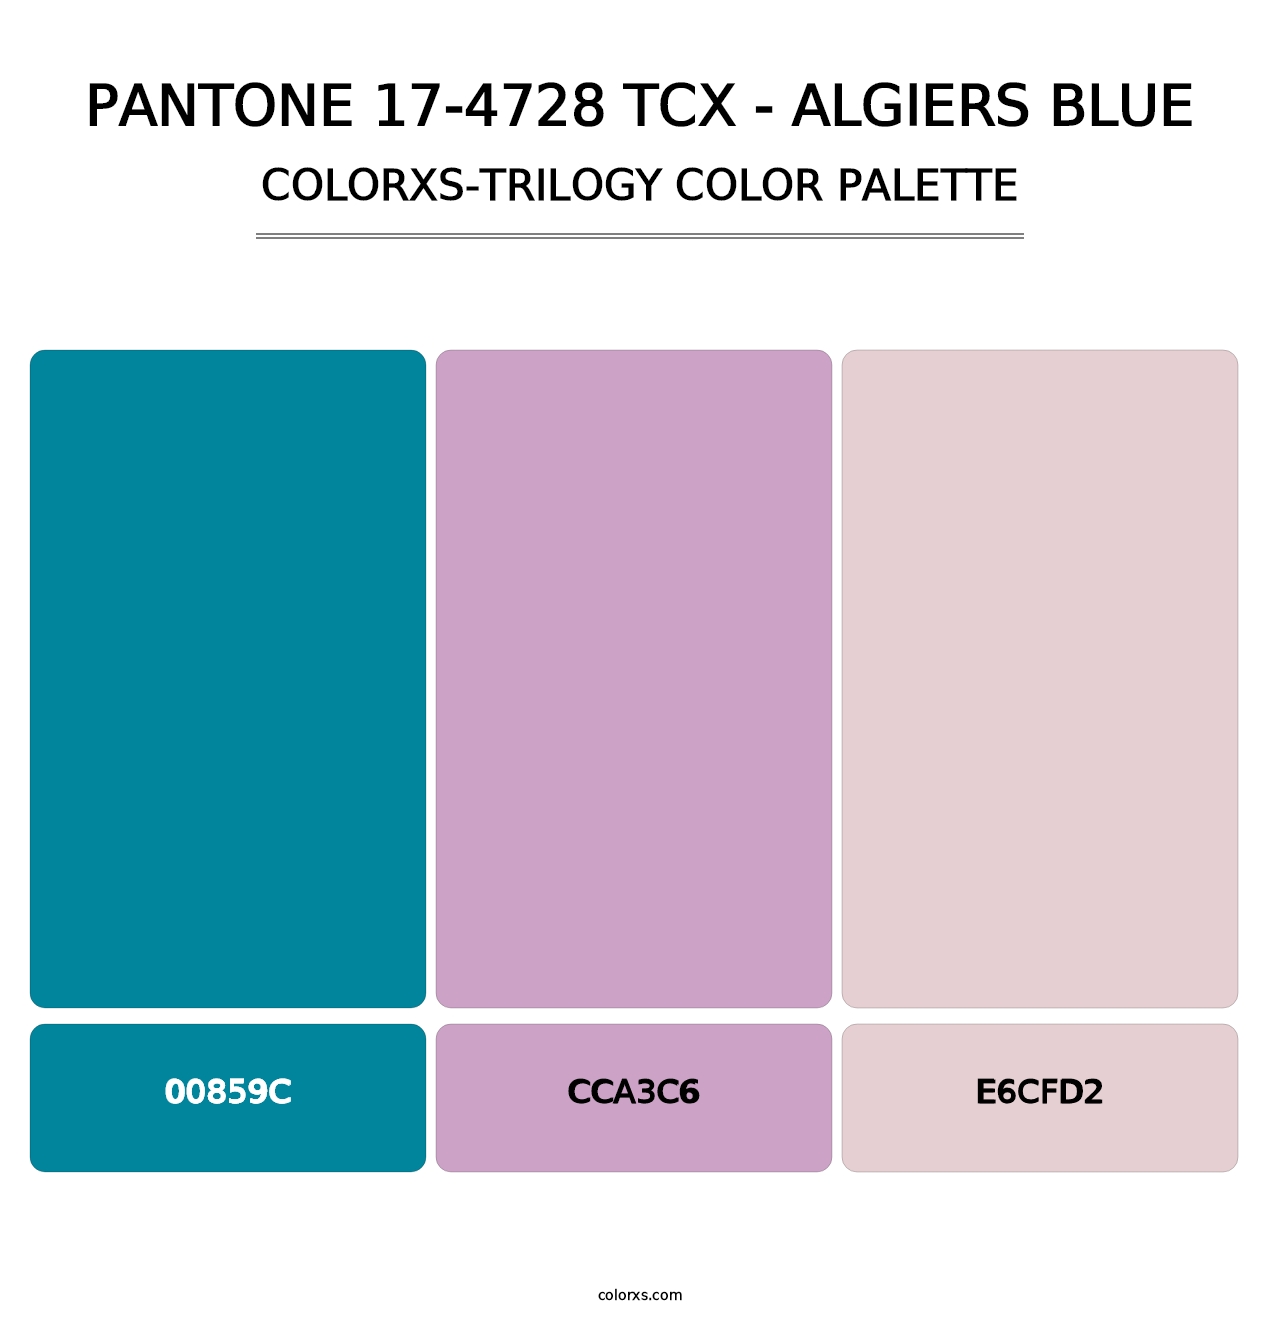 PANTONE 17-4728 TCX - Algiers Blue - Colorxs Trilogy Palette